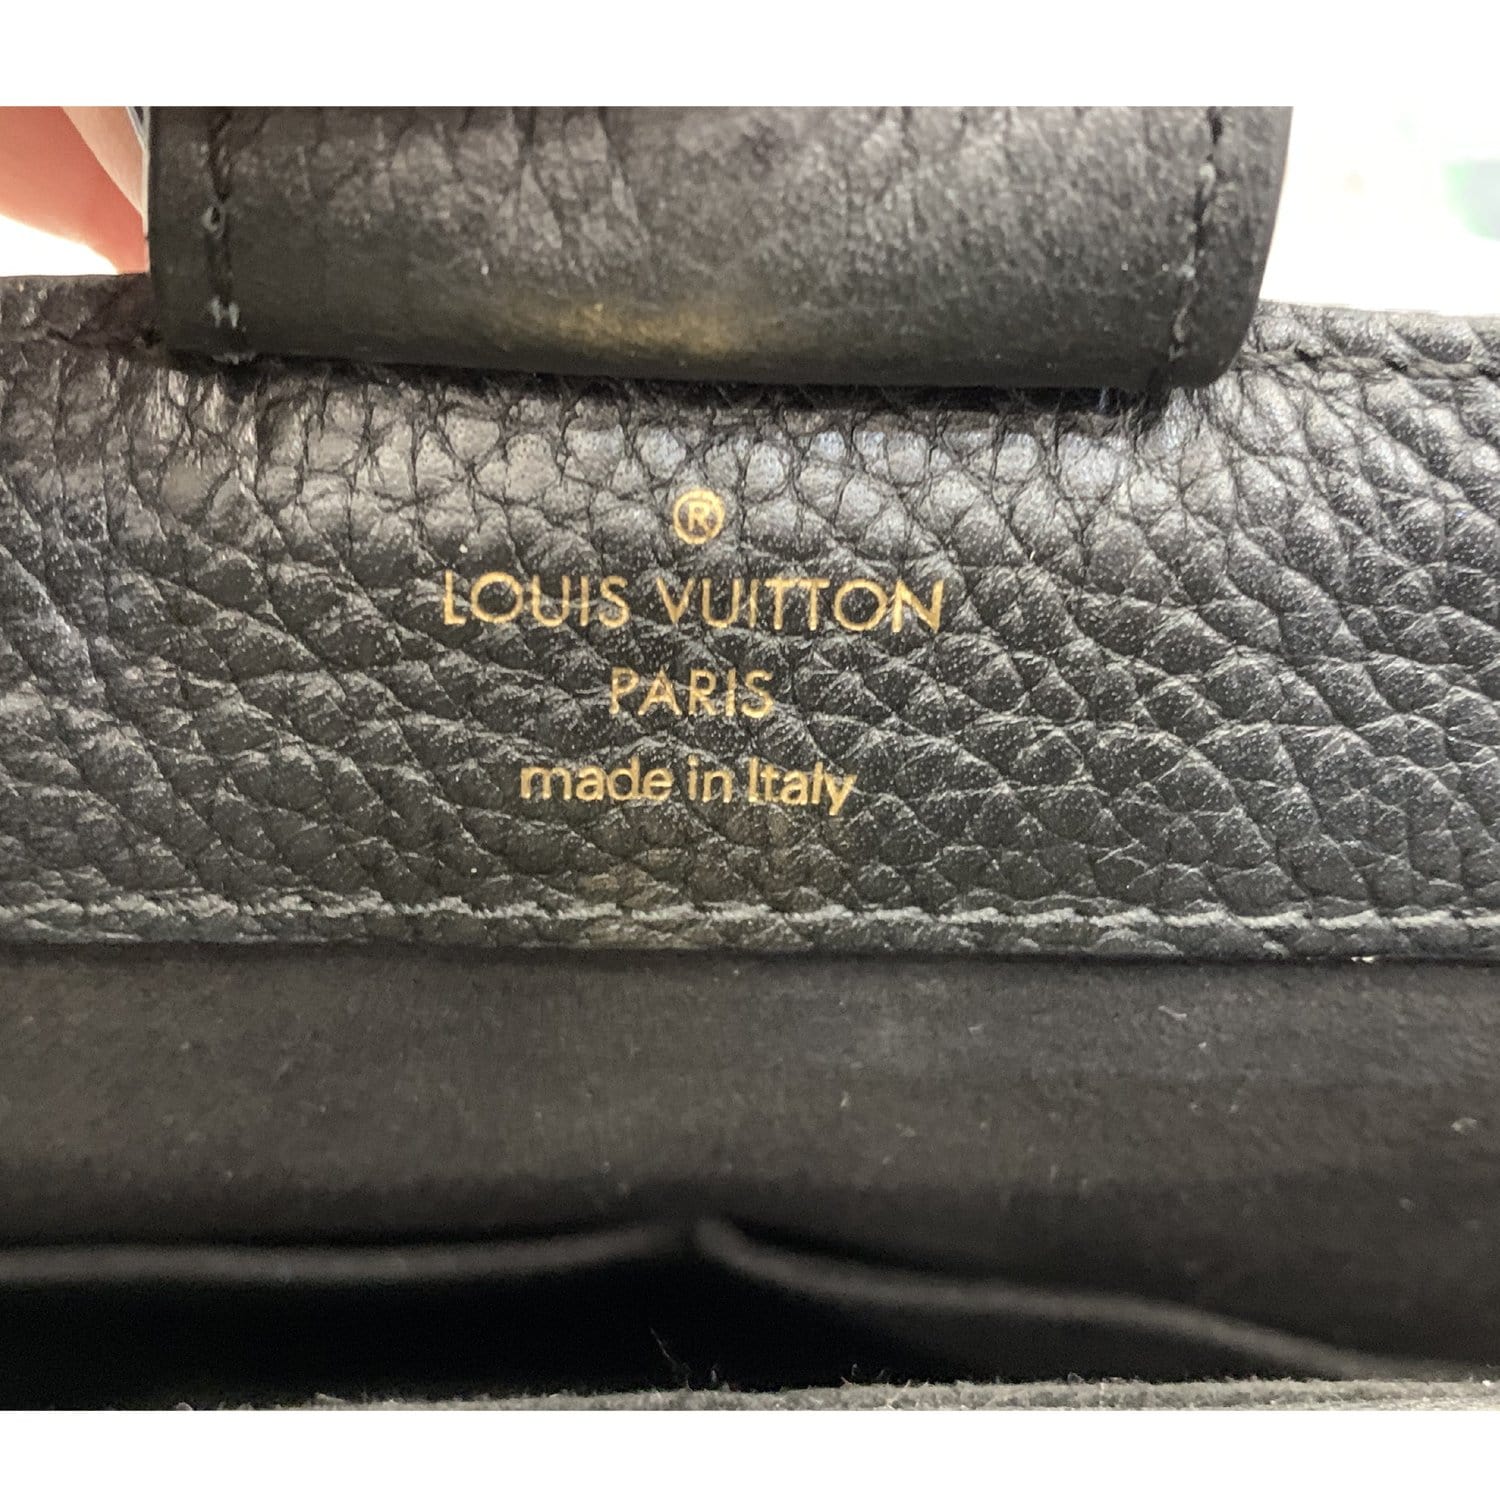 Louis Vuitton Brittany - Luxe Du Jour